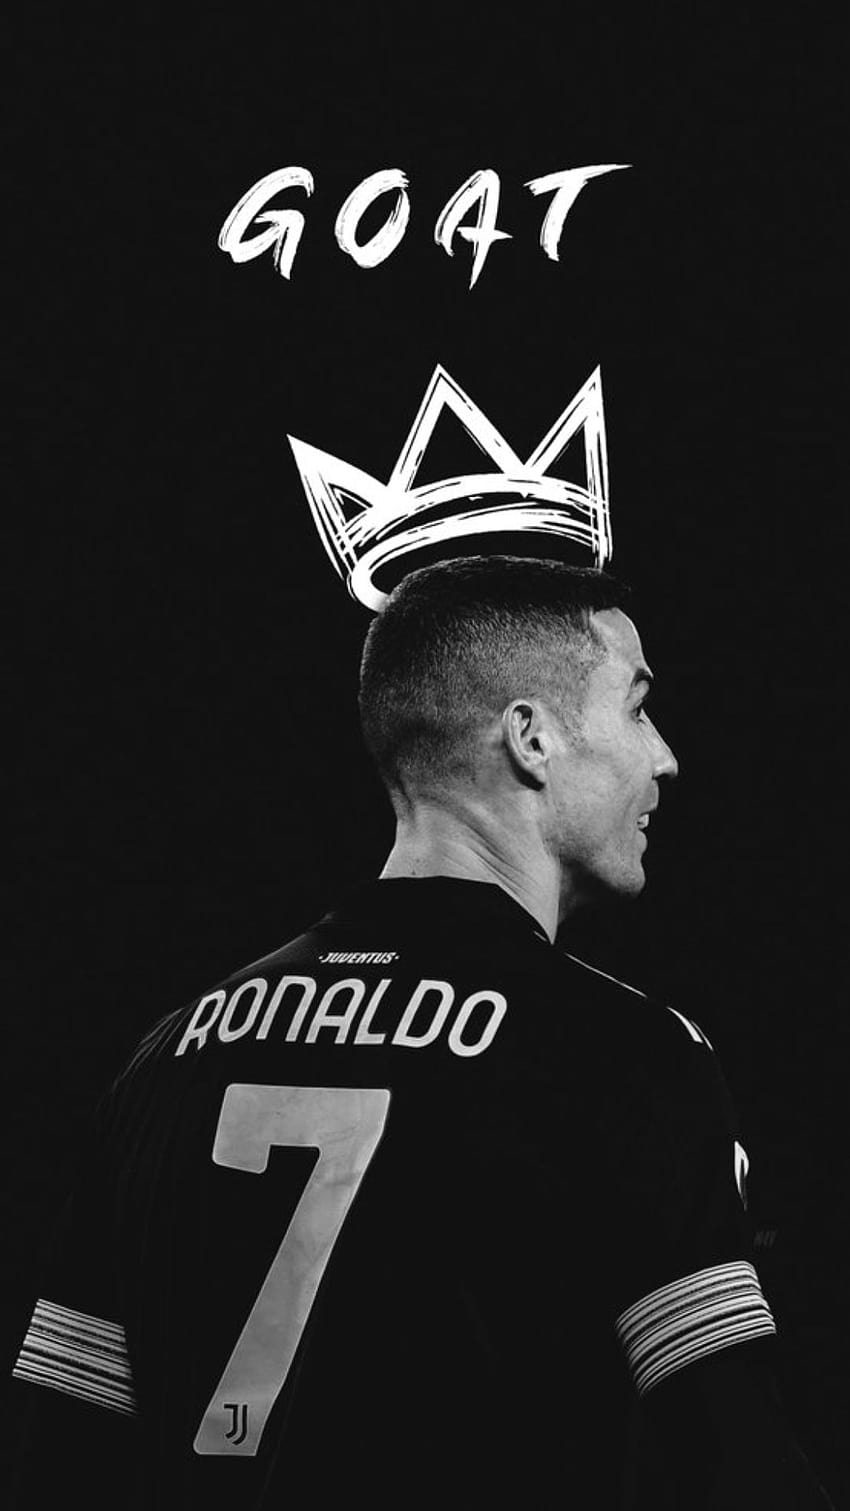 Download Amazing Juventus Team Member Ronaldo iPhone Wallpaper  Wallpapers com